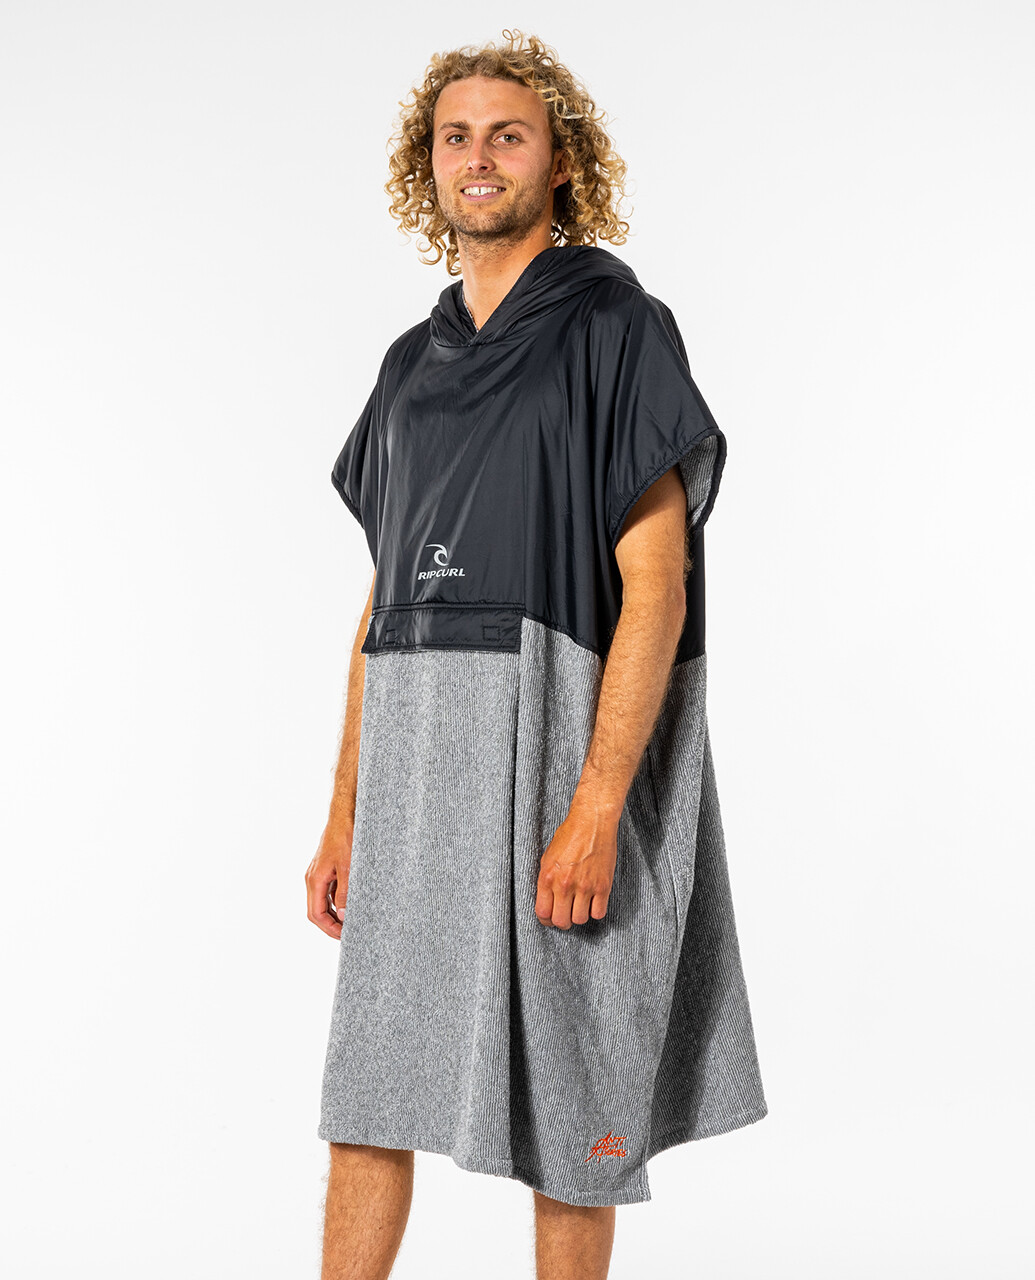 Rip Curl - Anti-Series Hooded Towel for men - Black/Grey